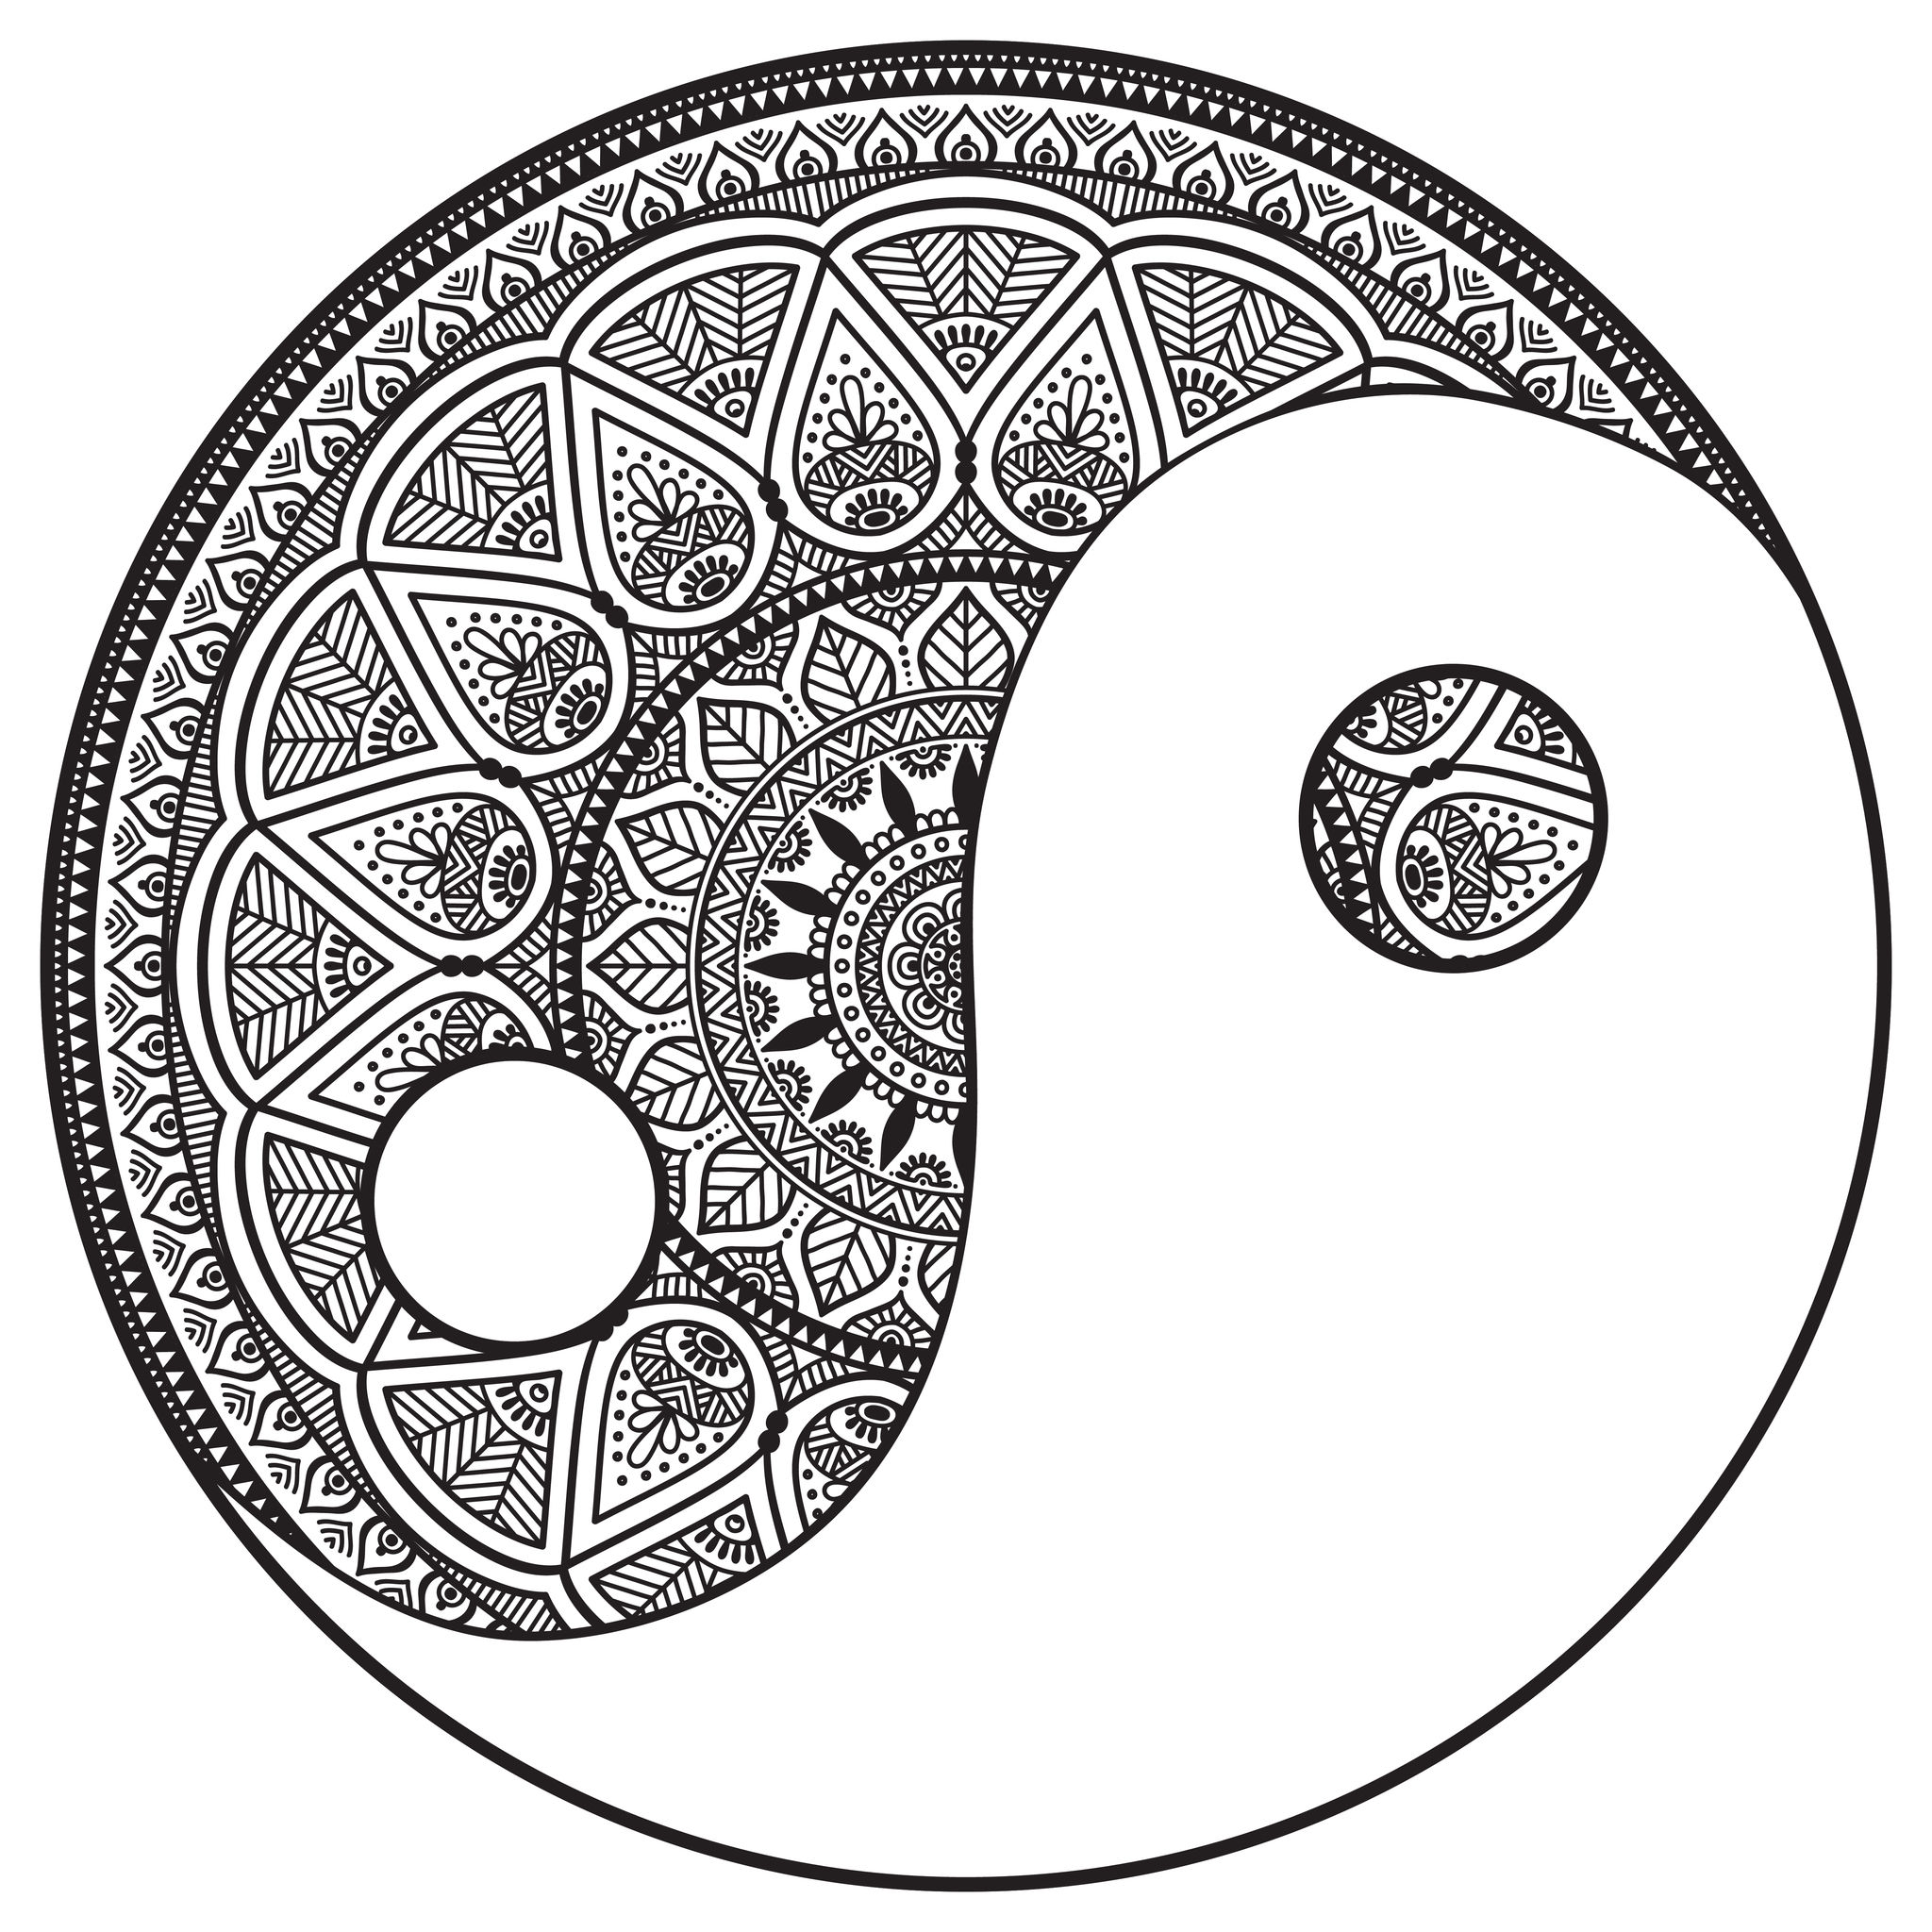 Ein Yin & Yang-Mandala, das recht schwierig zu kolorieren ist. Es ist perfekt, wenn Sie gerne kleine Bereiche farbig gestalten und abwechslungsreiche Details mögen.